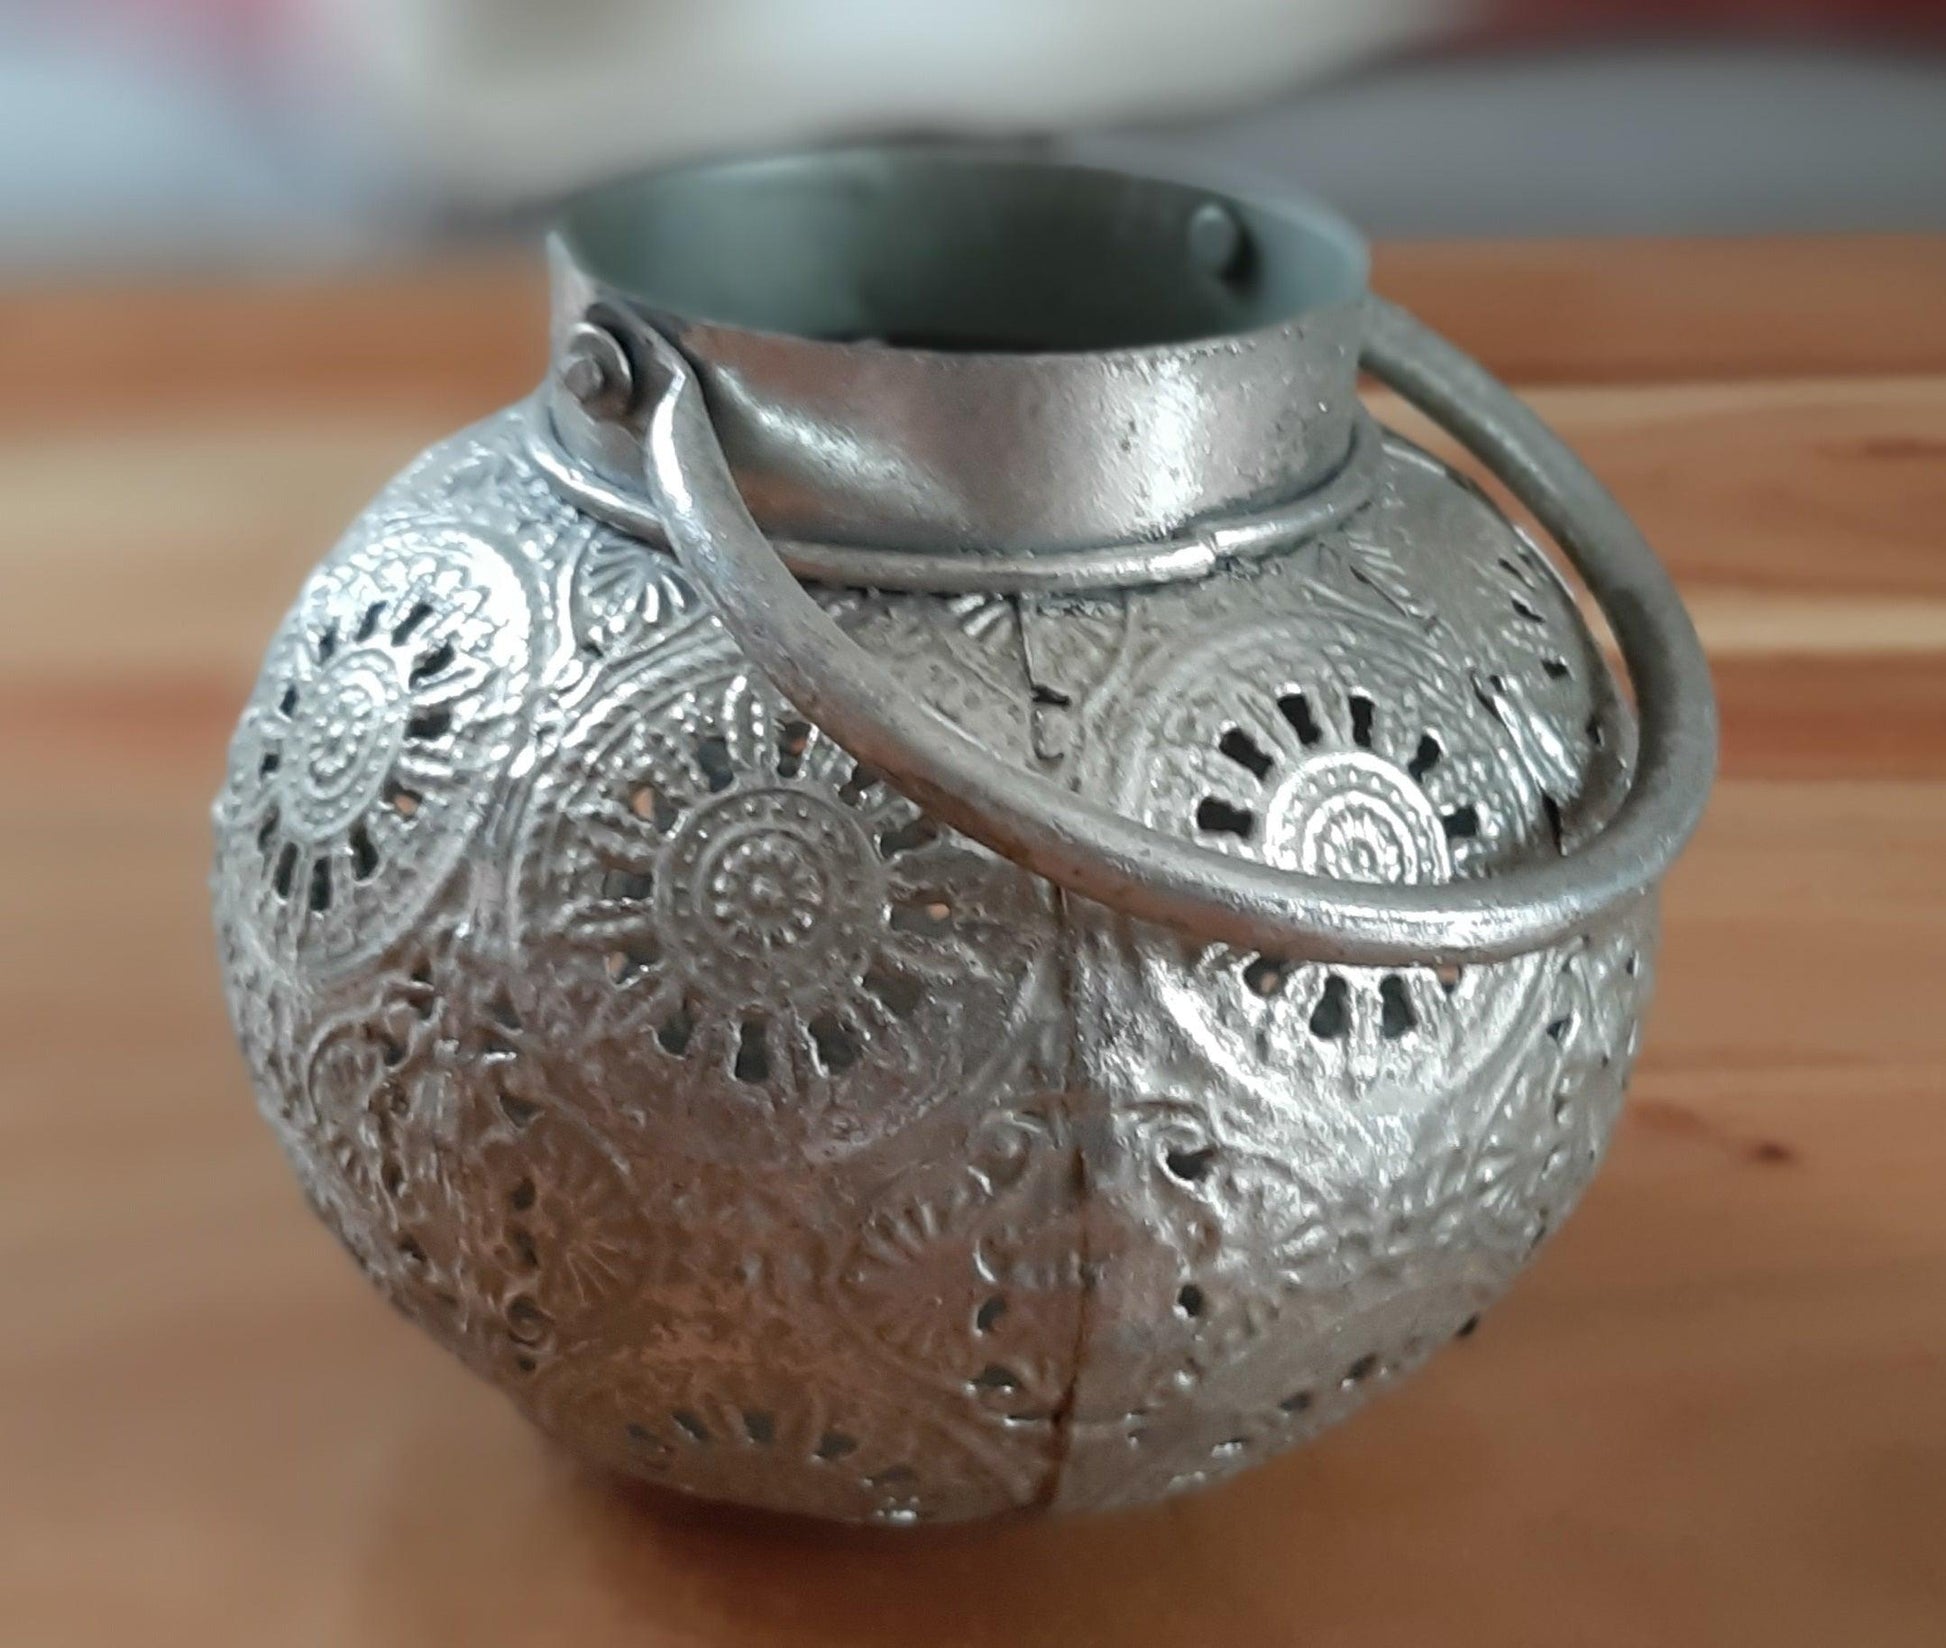 Marokkanische Metall Laterne "Silberfarben" Small - zaubert wunderschöne Lichtspiele - KamelundMilch.de